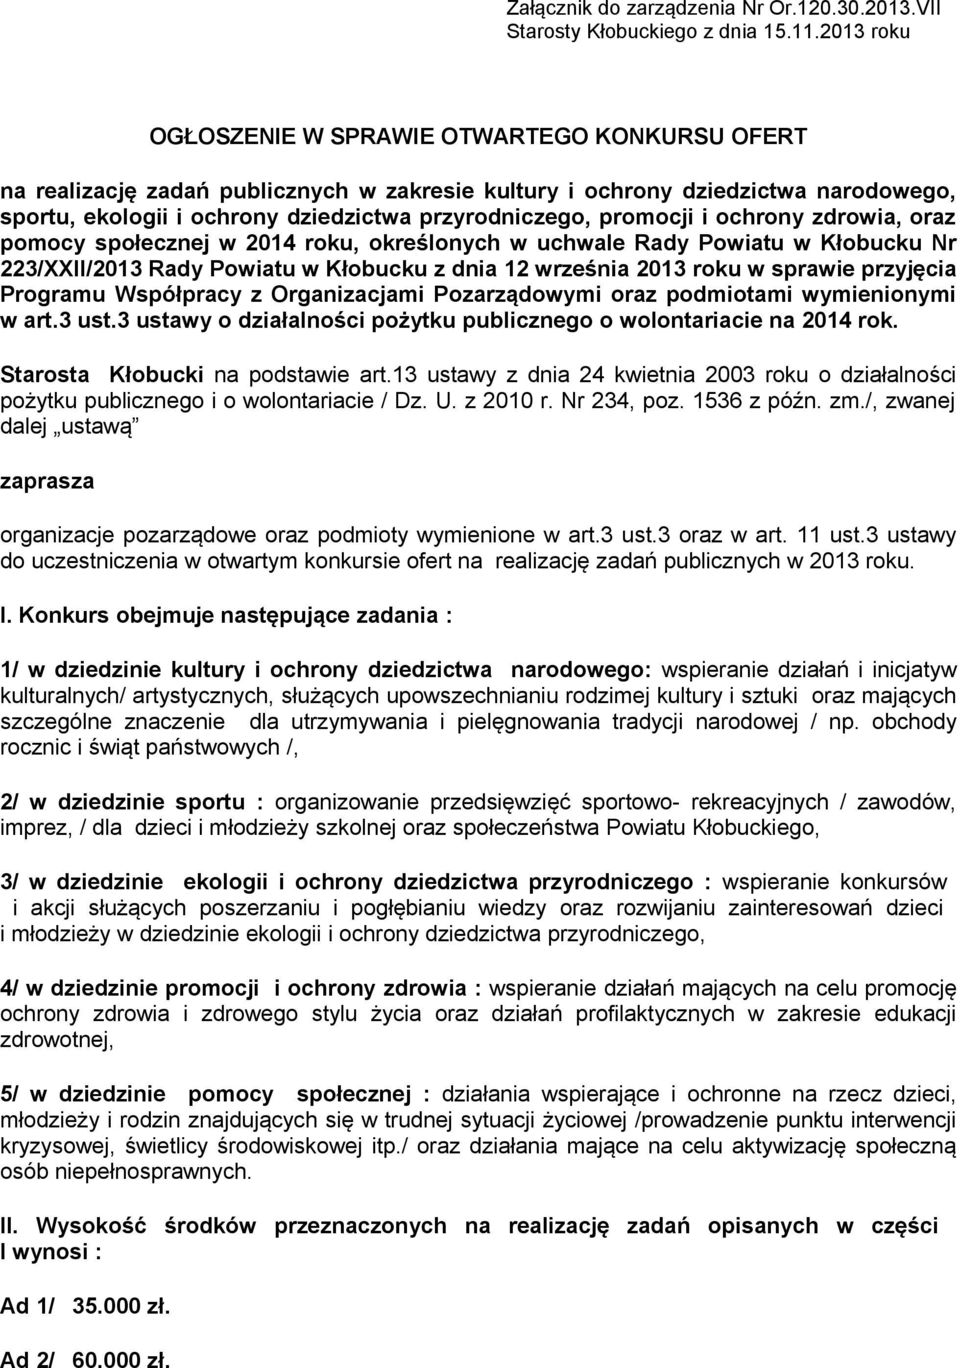 promocji i ochrony zdrowia, oraz pomocy społecznej w 2014 roku, określonych w uchwale Rady Powiatu w Kłobucku Nr 223/XXII/2013 Rady Powiatu w Kłobucku z dnia 12 września 2013 roku w sprawie przyjęcia